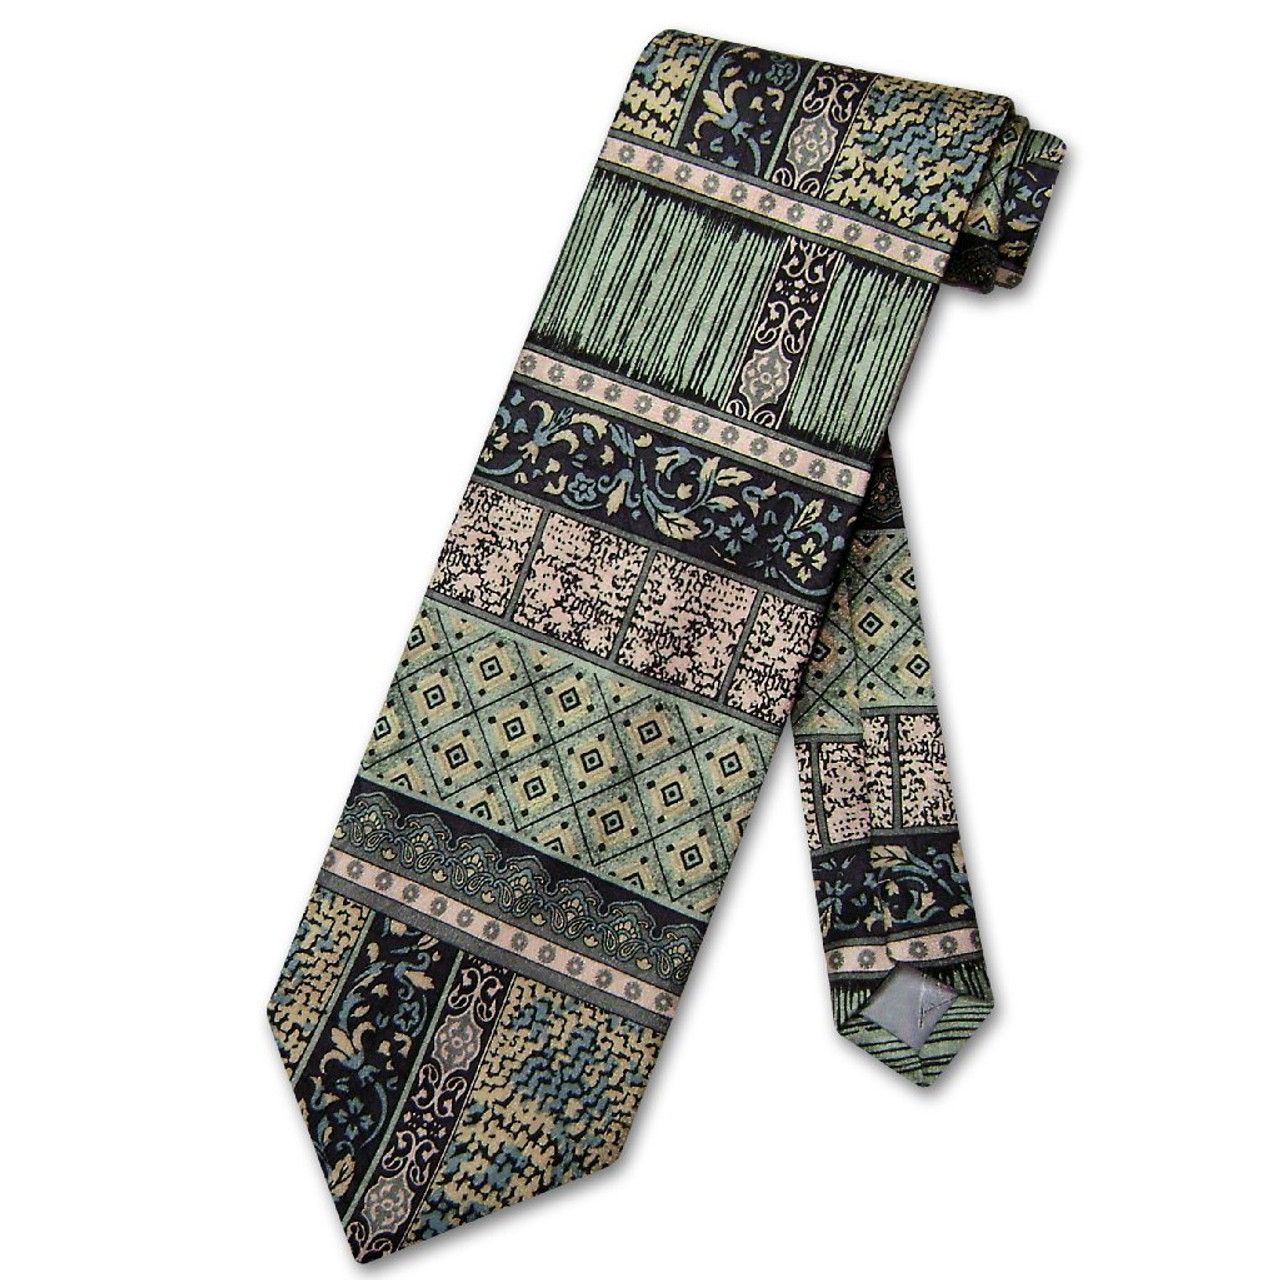 Antonio Ricci Silk NeckTie Made in Italy Design Mens Neck Tie #3106-2